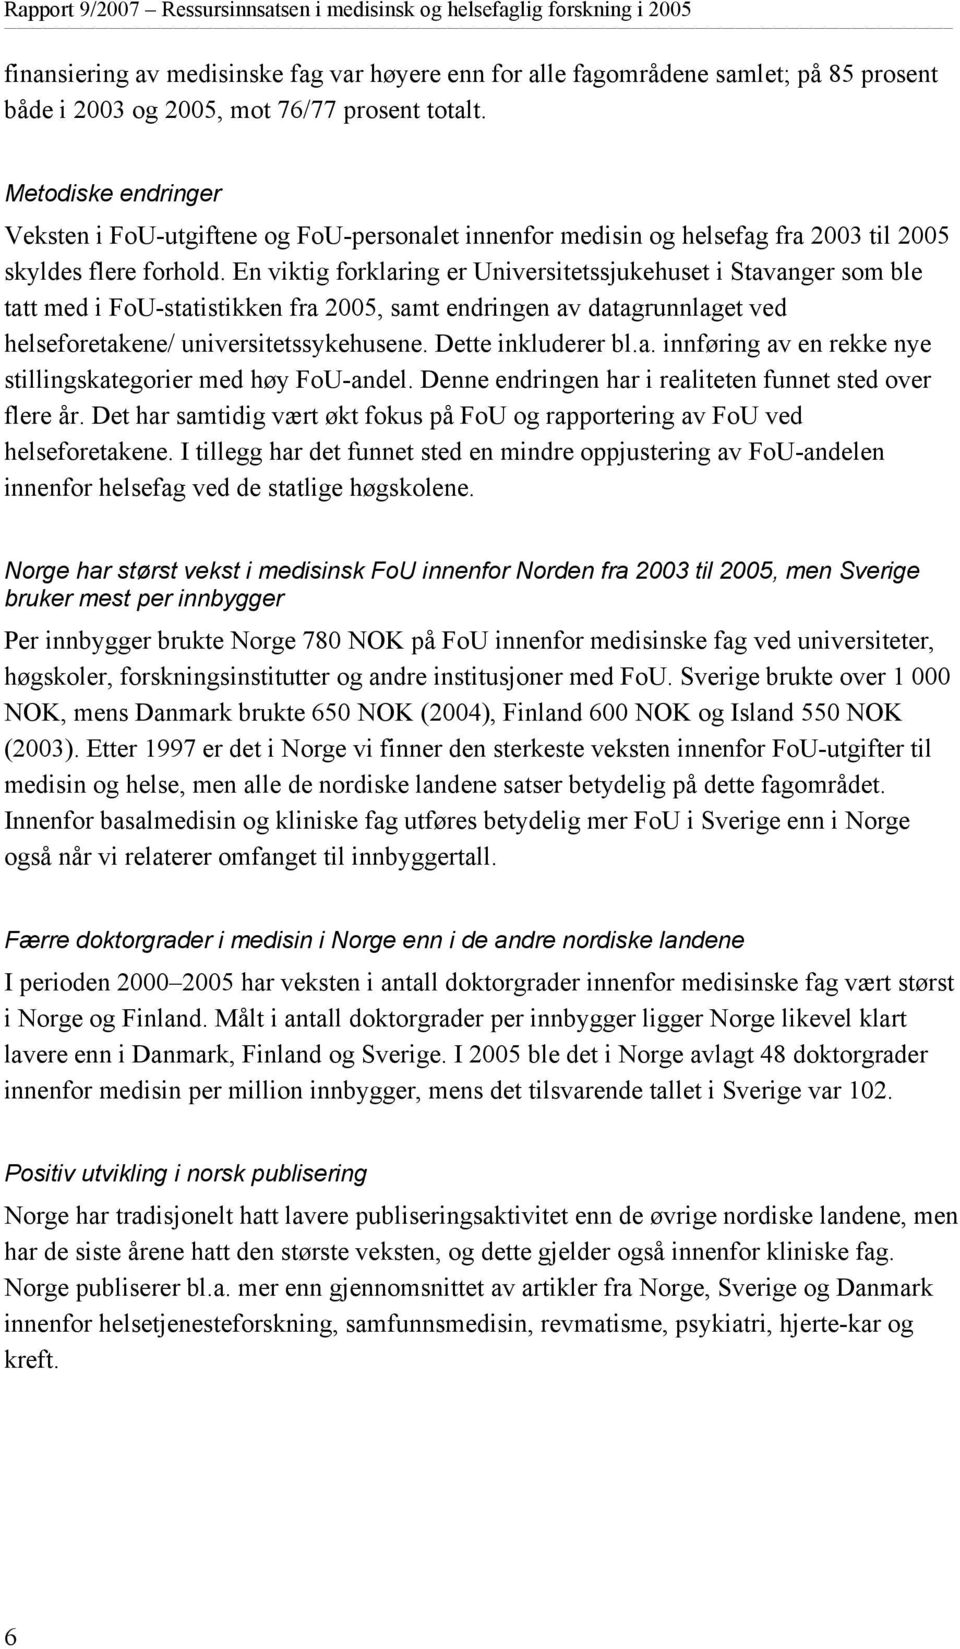 En viktig forklaring er Universitetssjukehuset i Stavanger som ble tatt med i FoU-statistikken fra 2005, samt endringen av datagrunnlaget ved helseforetakene/ universitetssykehusene.